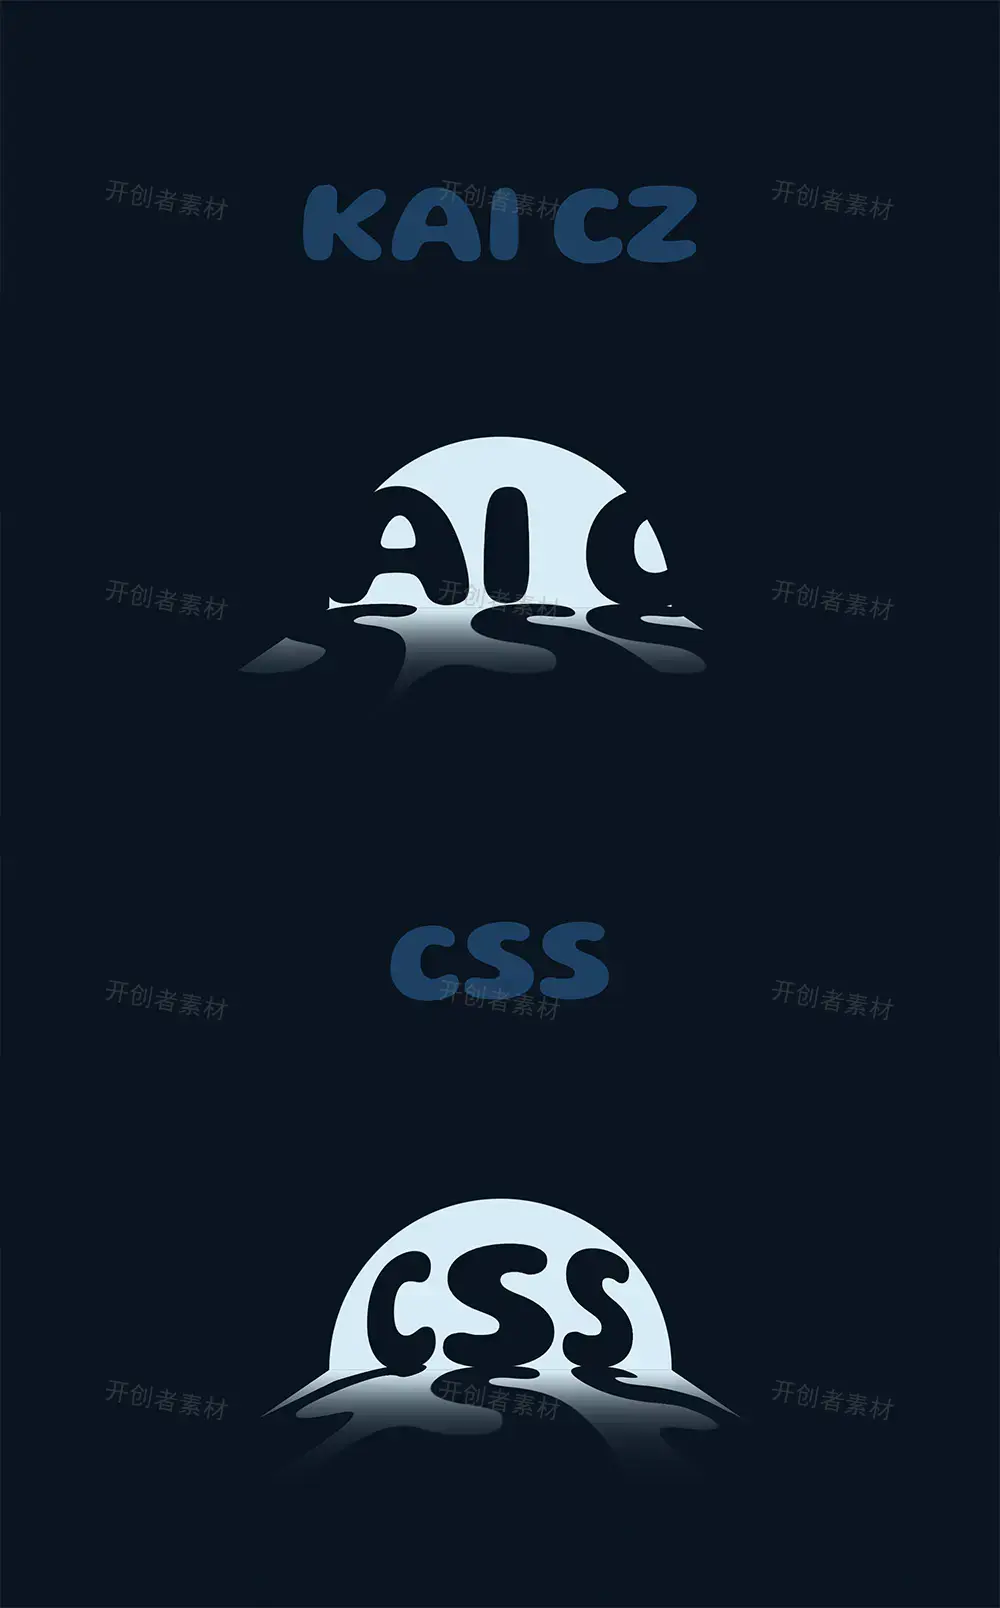 鼠标悬停聚光灯CSS3阴影特效